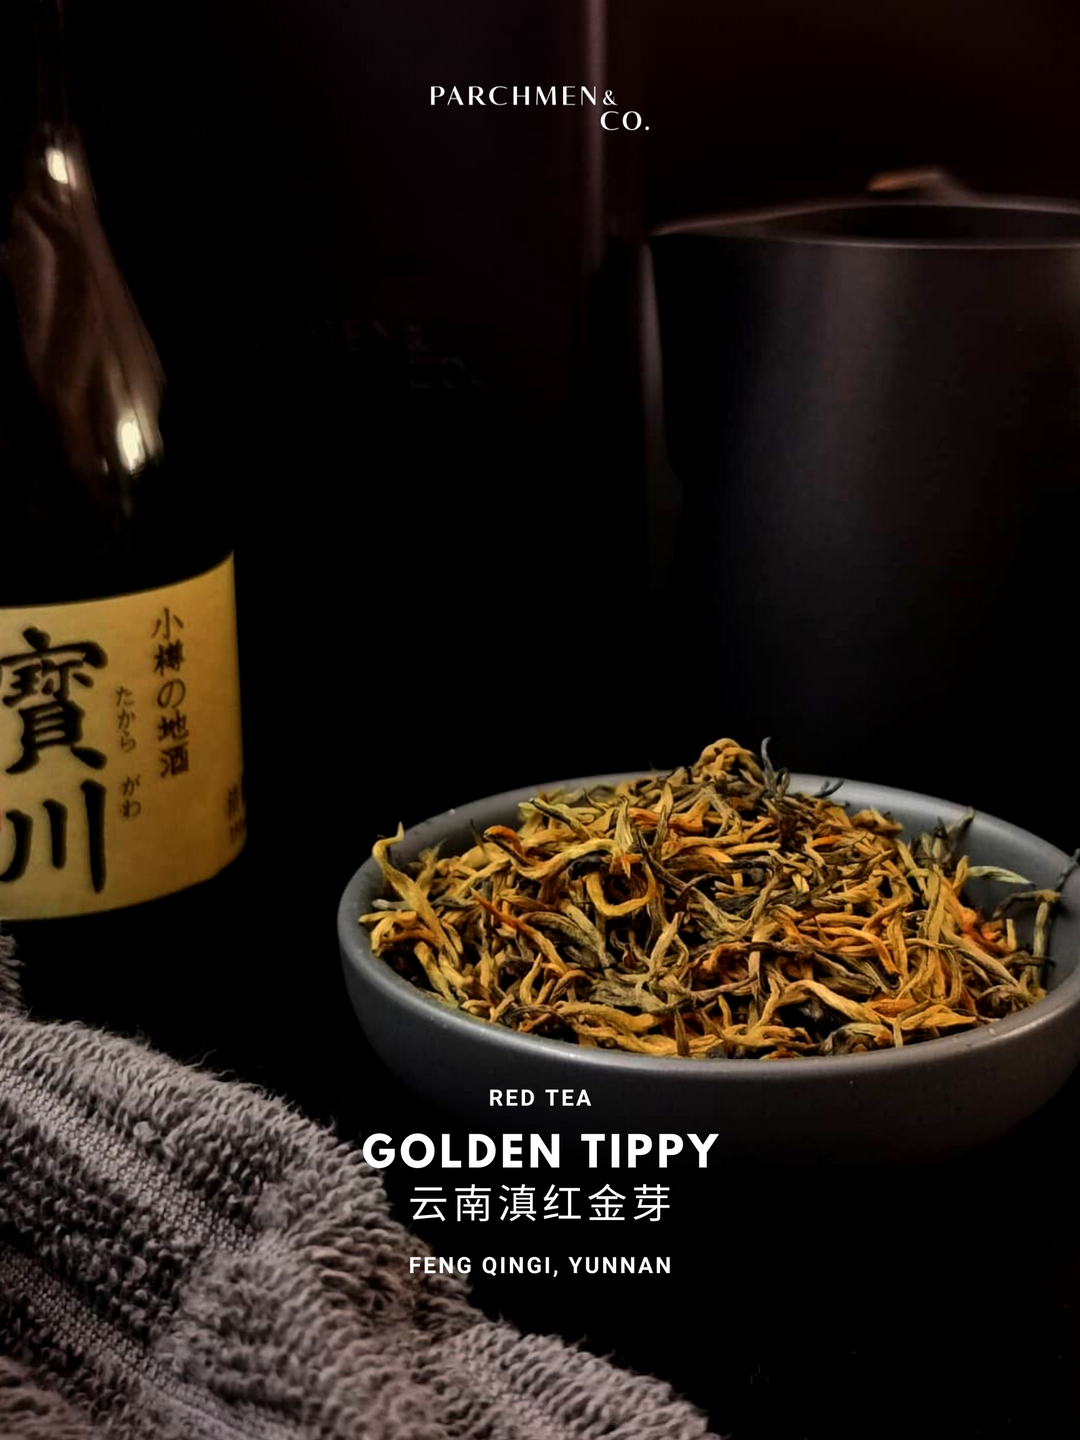 Golden Tippy Dian Hong